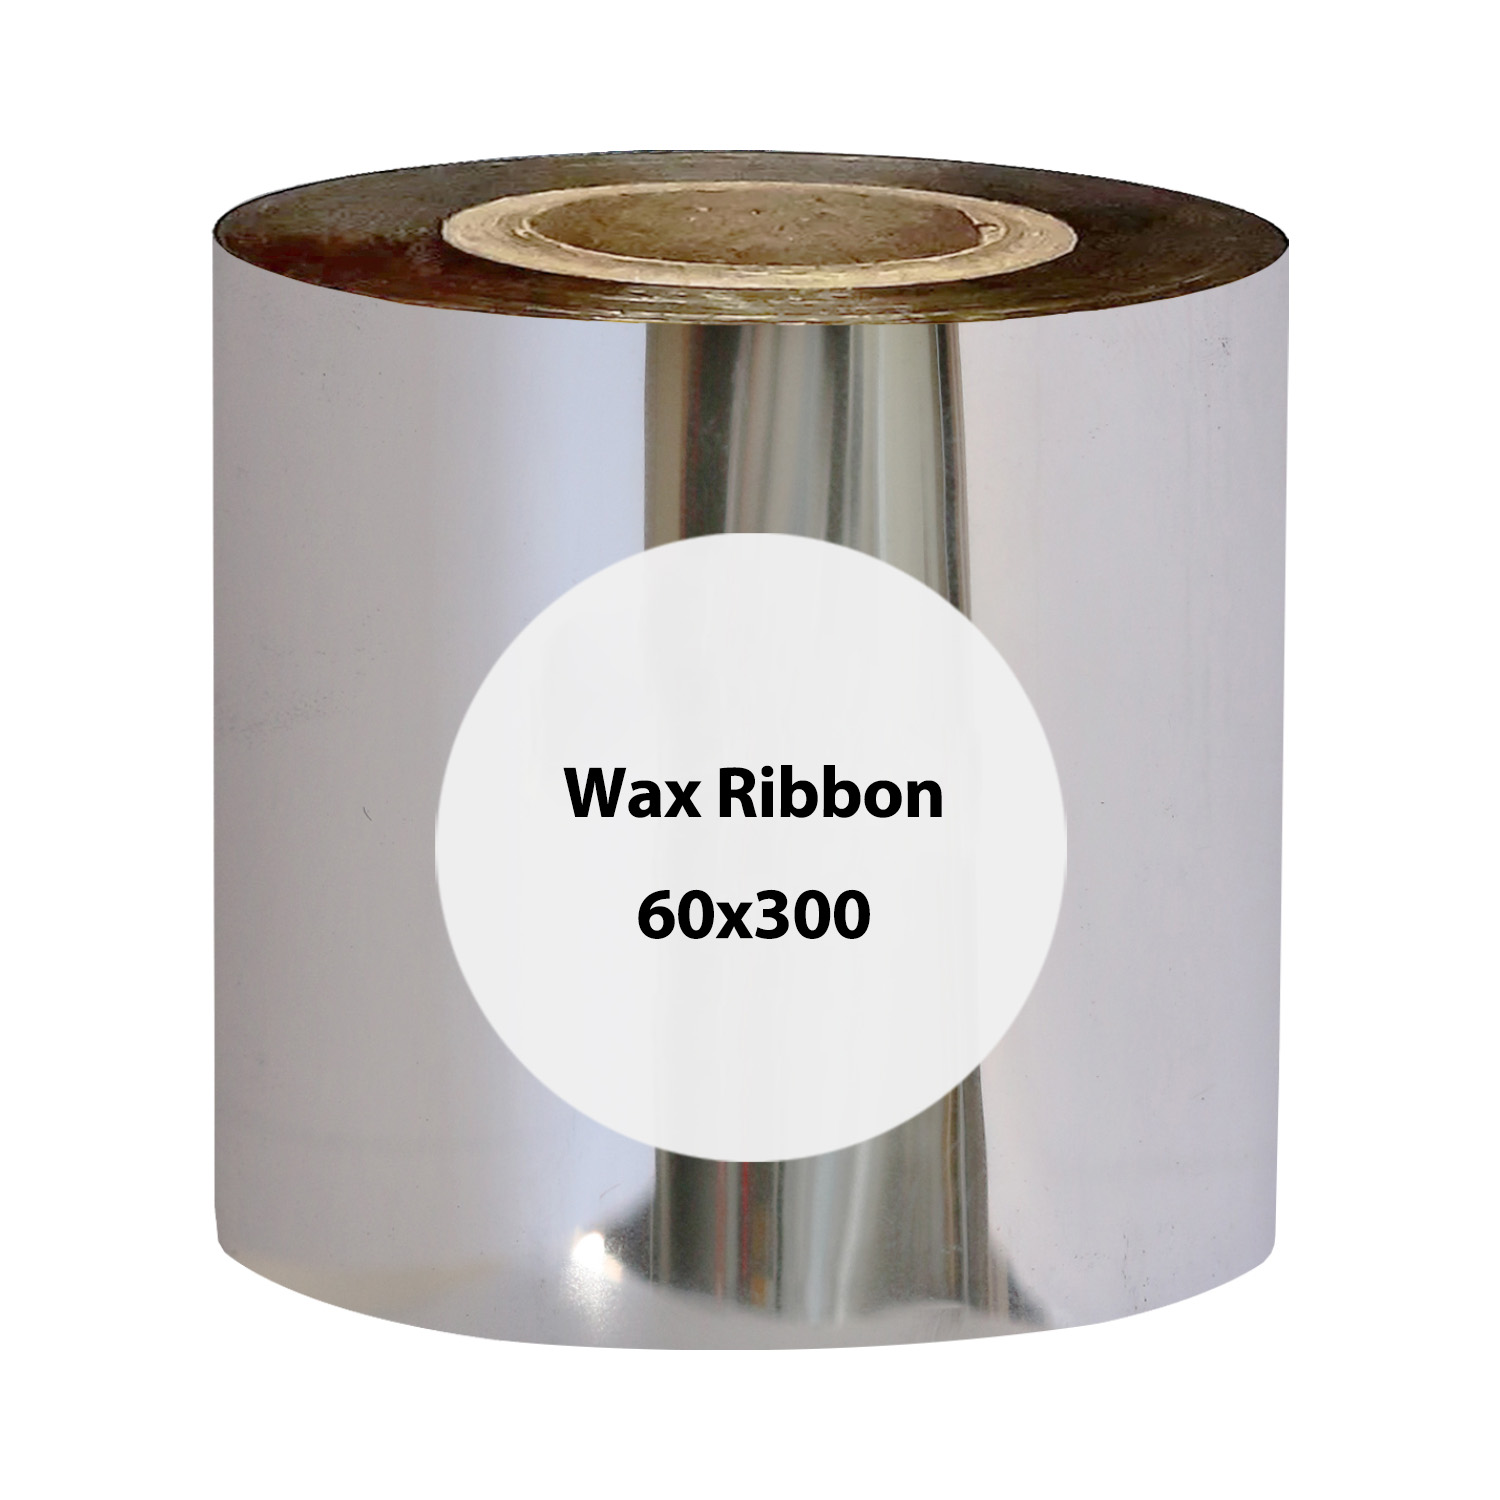 ریبون وکس مدل  WAX 300m x 60mm بسته 12 عددی